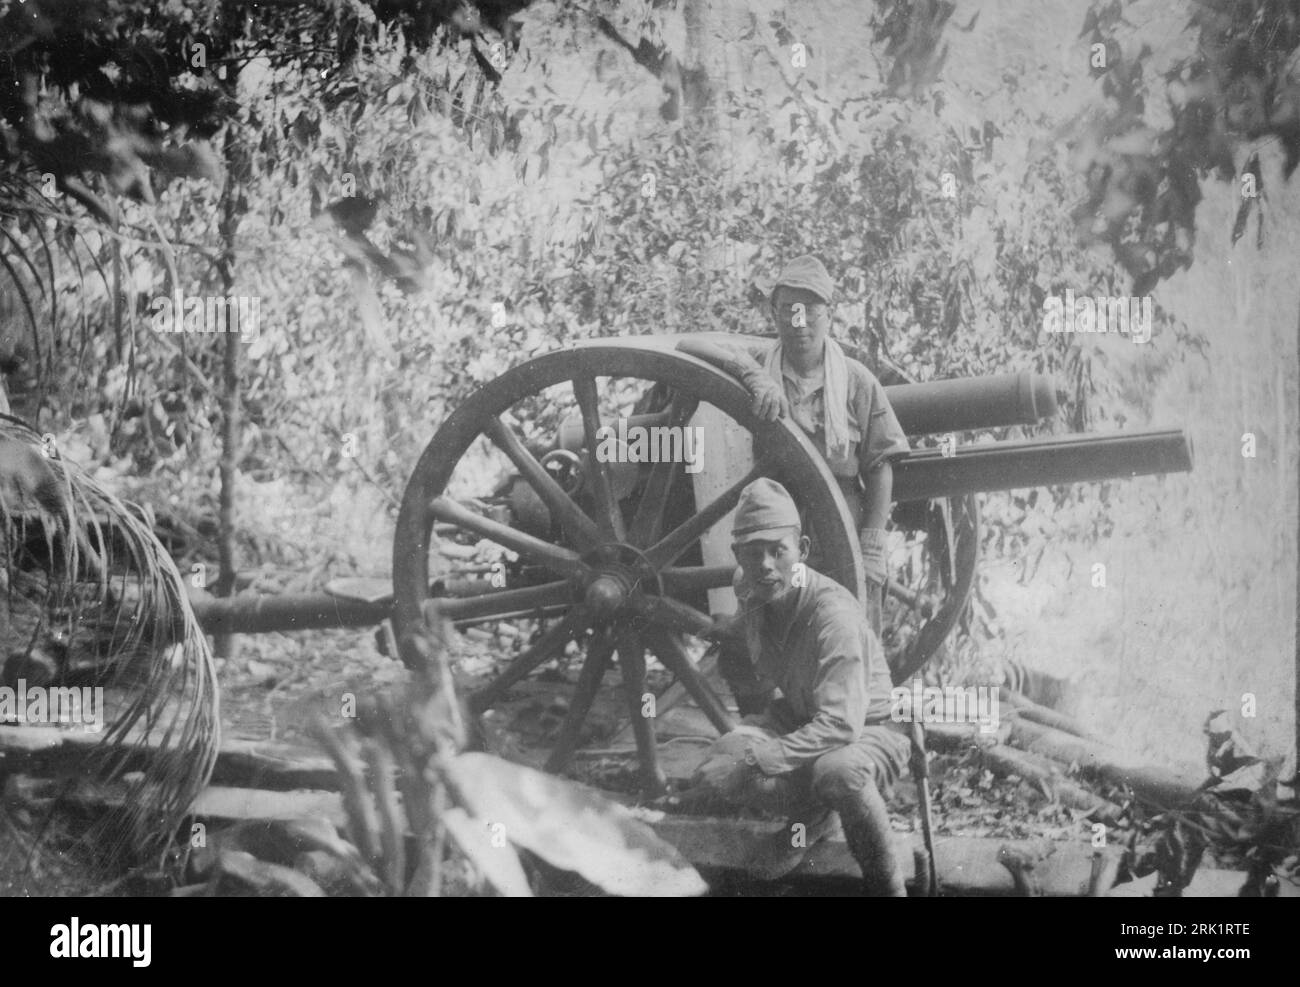 Invasion des Philippines, décembre 1941 – mai 1942. Les troupes de l'armée impériale japonaise posent avec un canon de campagne américain M1917 de 75 mm capturé après avoir pris une position d'artillerie américaine sur le mont Samat pendant la bataille de Bataan, en avril 5 1942. Banque D'Images